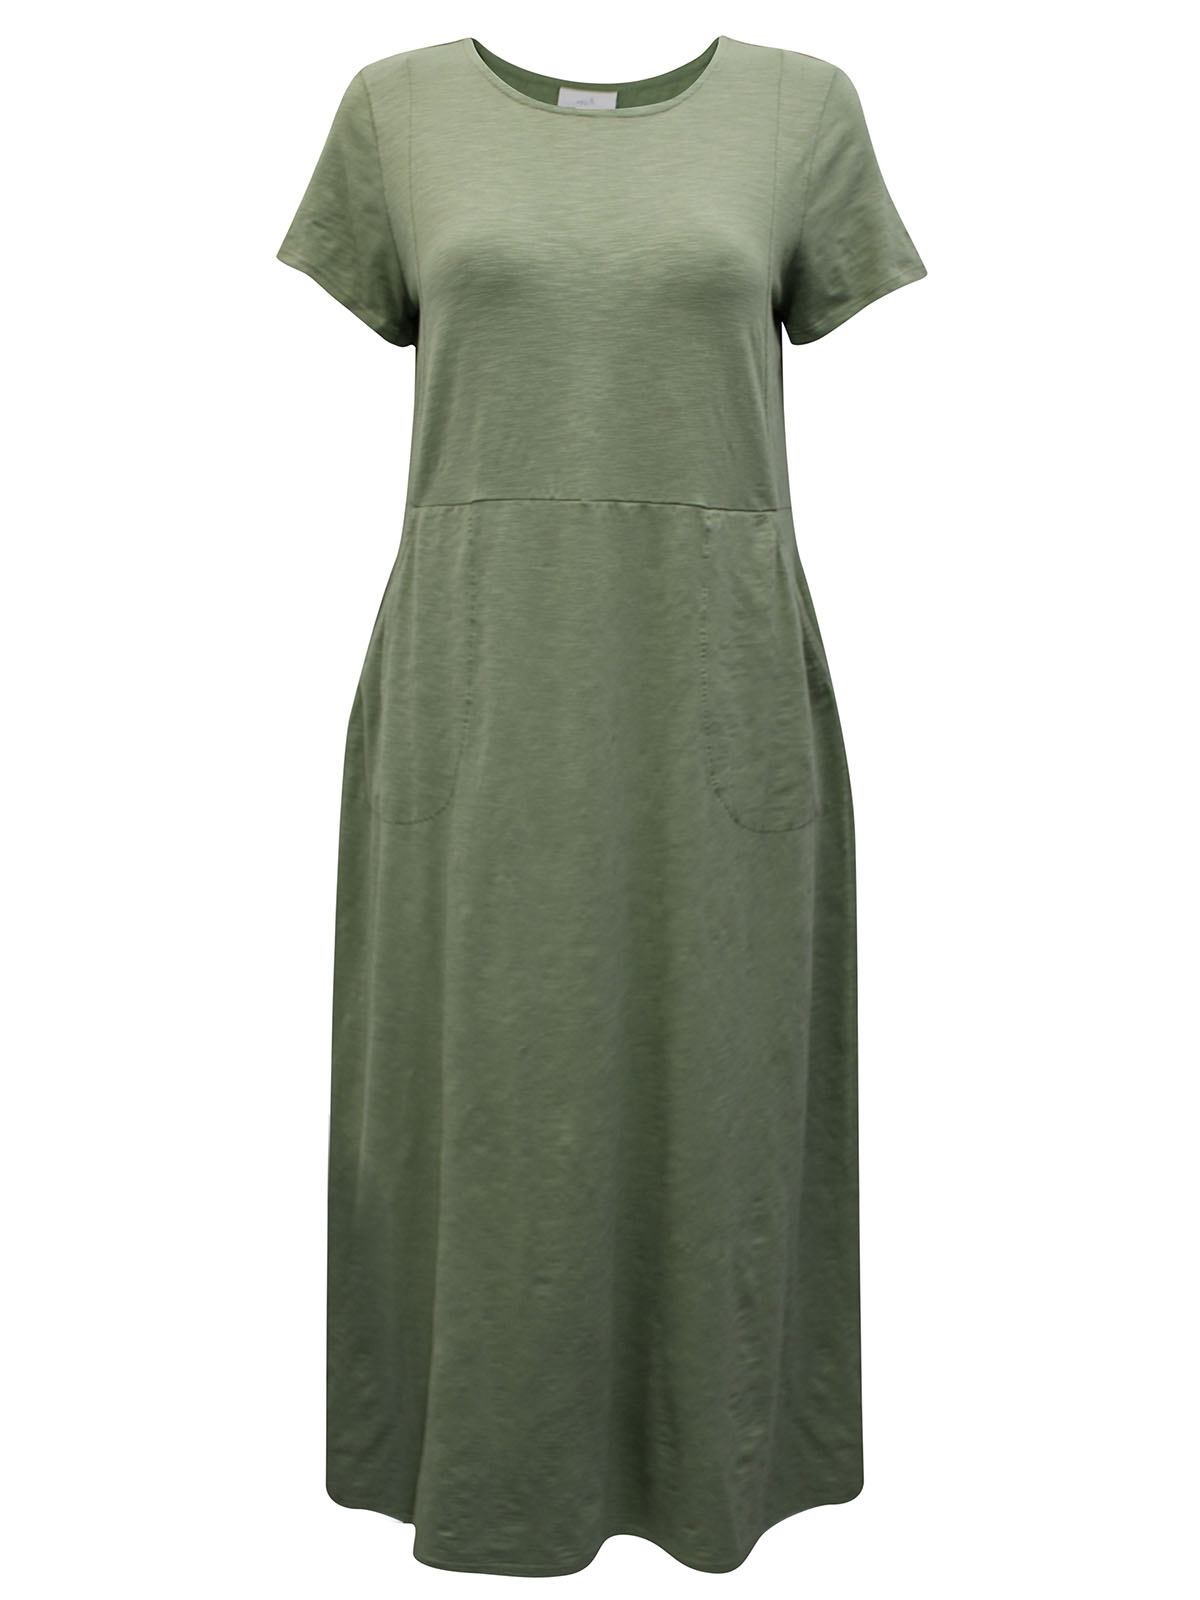 J.Jill - - J.Jill SAGE Pure Cotton Pocket Maxi Dress - Size 4/6 to